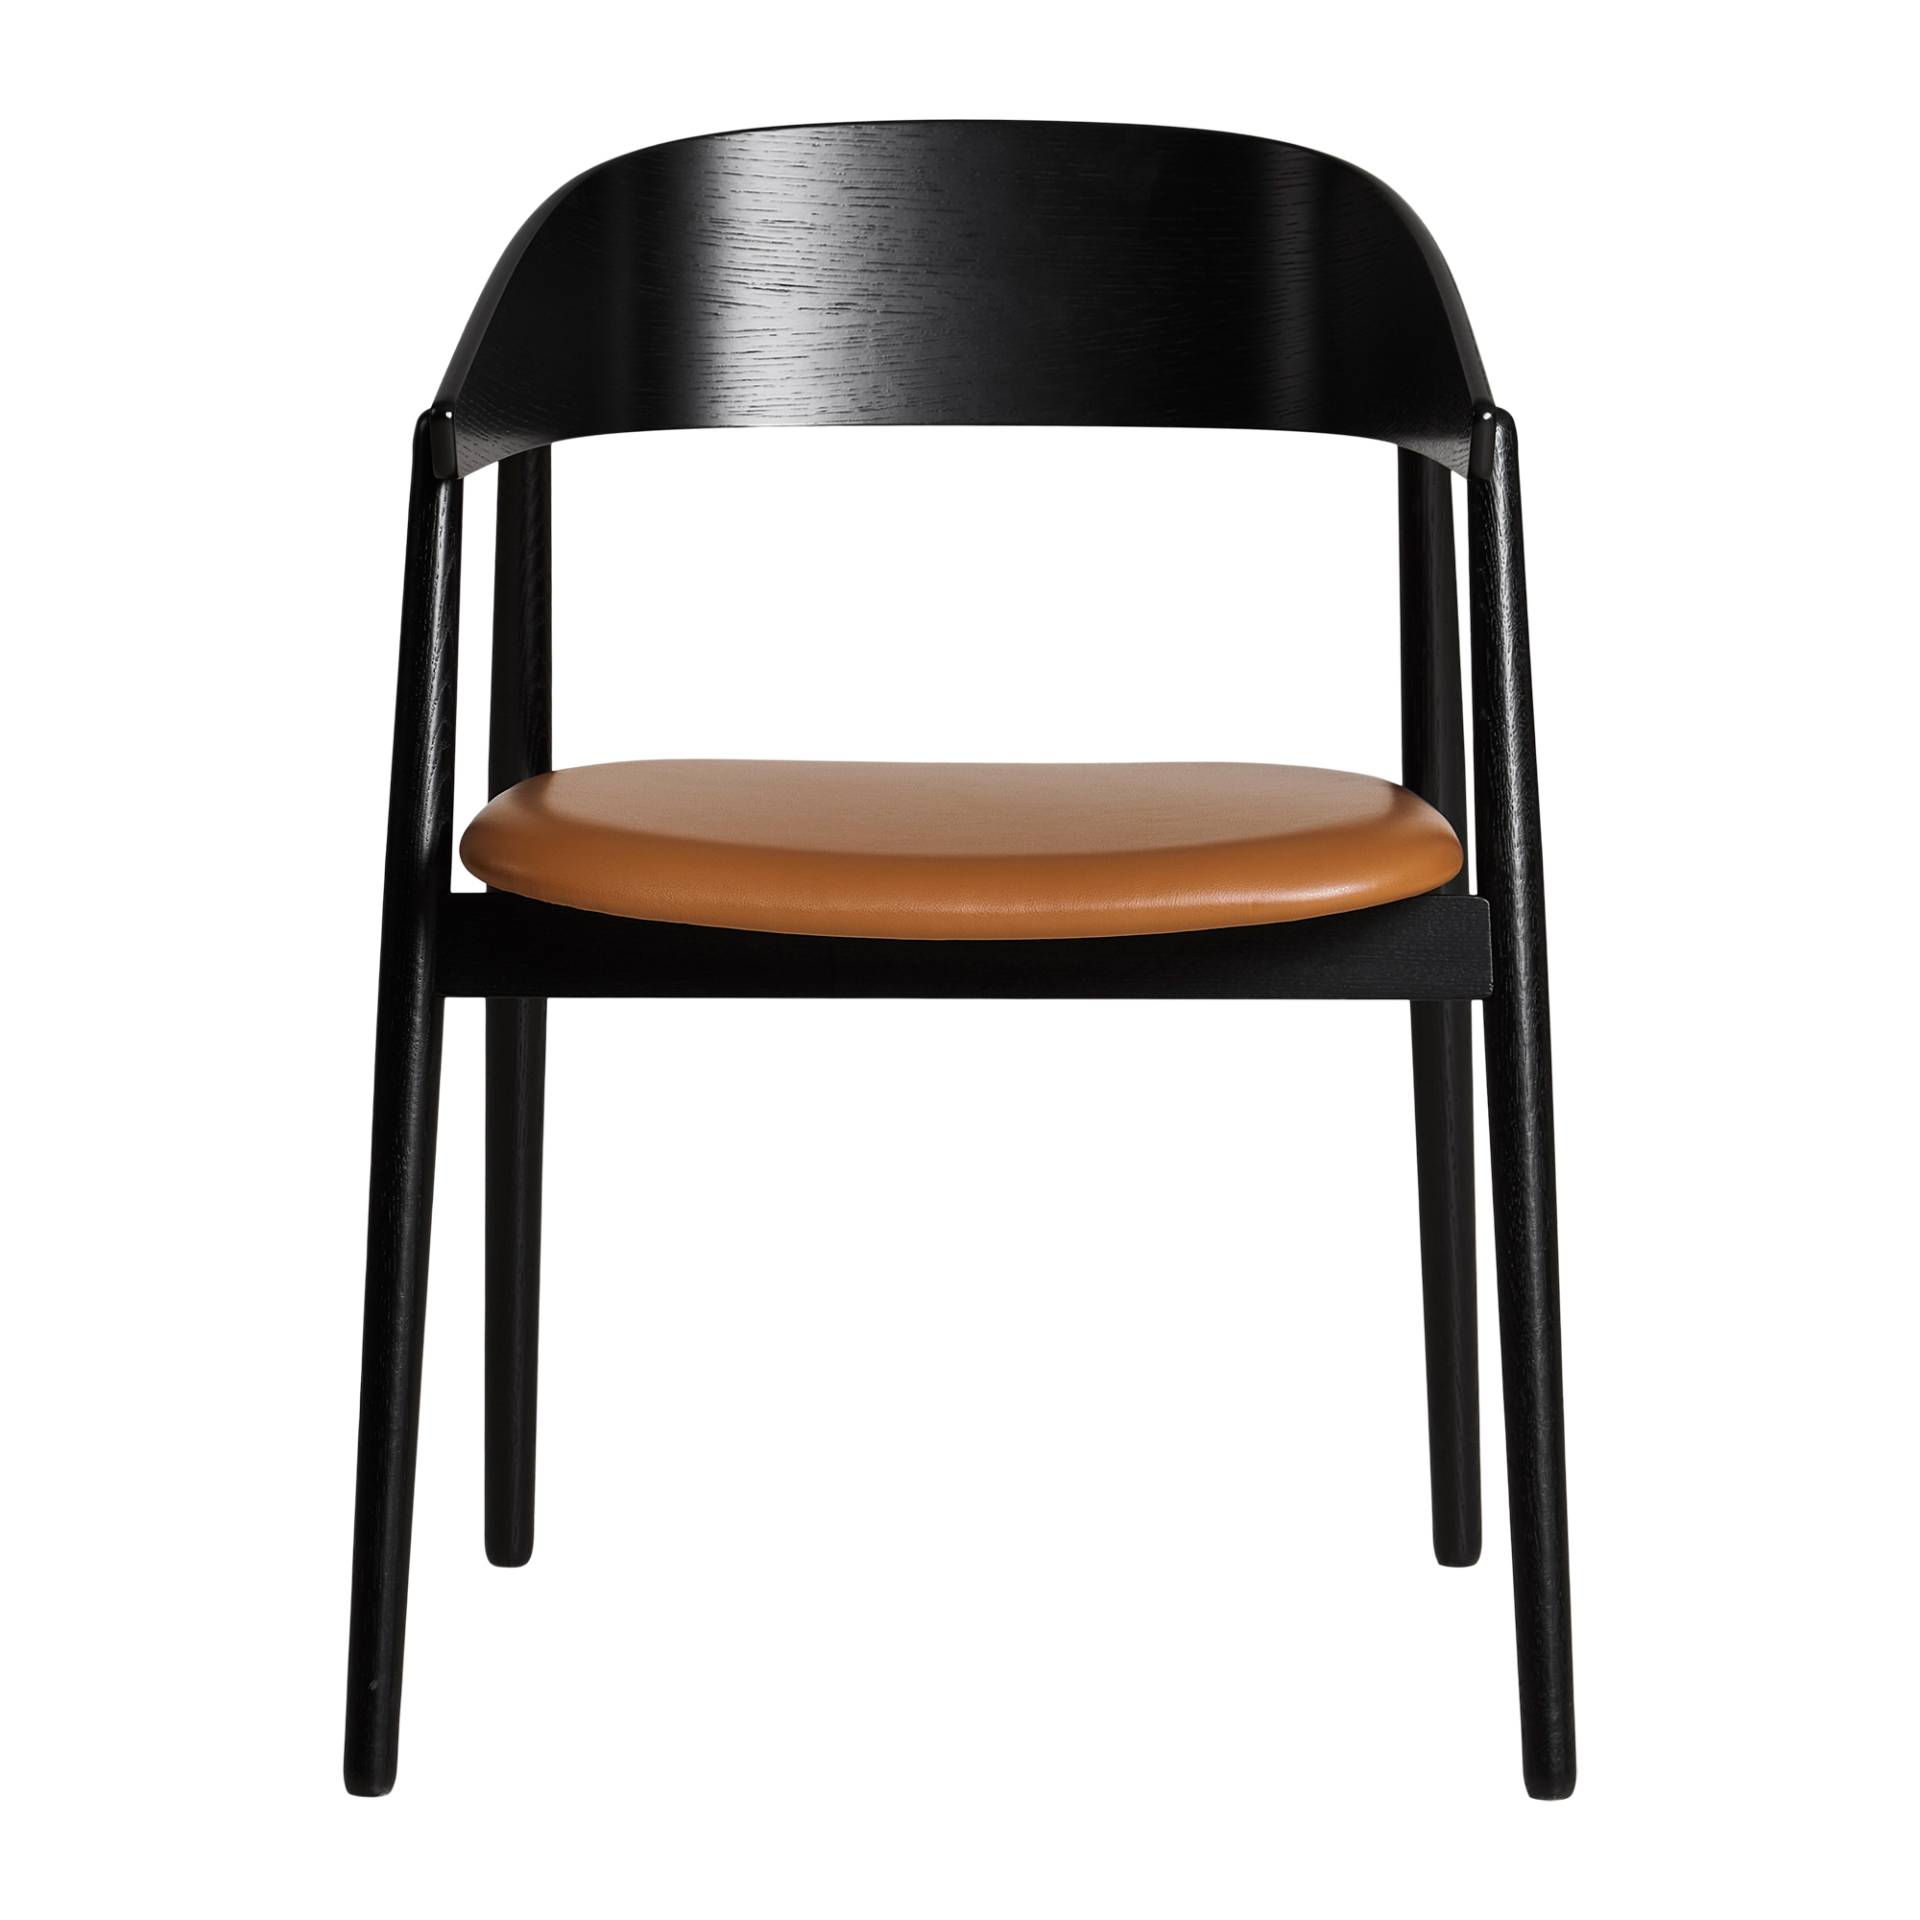 Andersen Furniture - AC2 Armlehnstuhl Leder - eiche schwarz/lackiert/BxHxT 58x74x53cm/Sitzfläche Leder cognac von Andersen Furniture